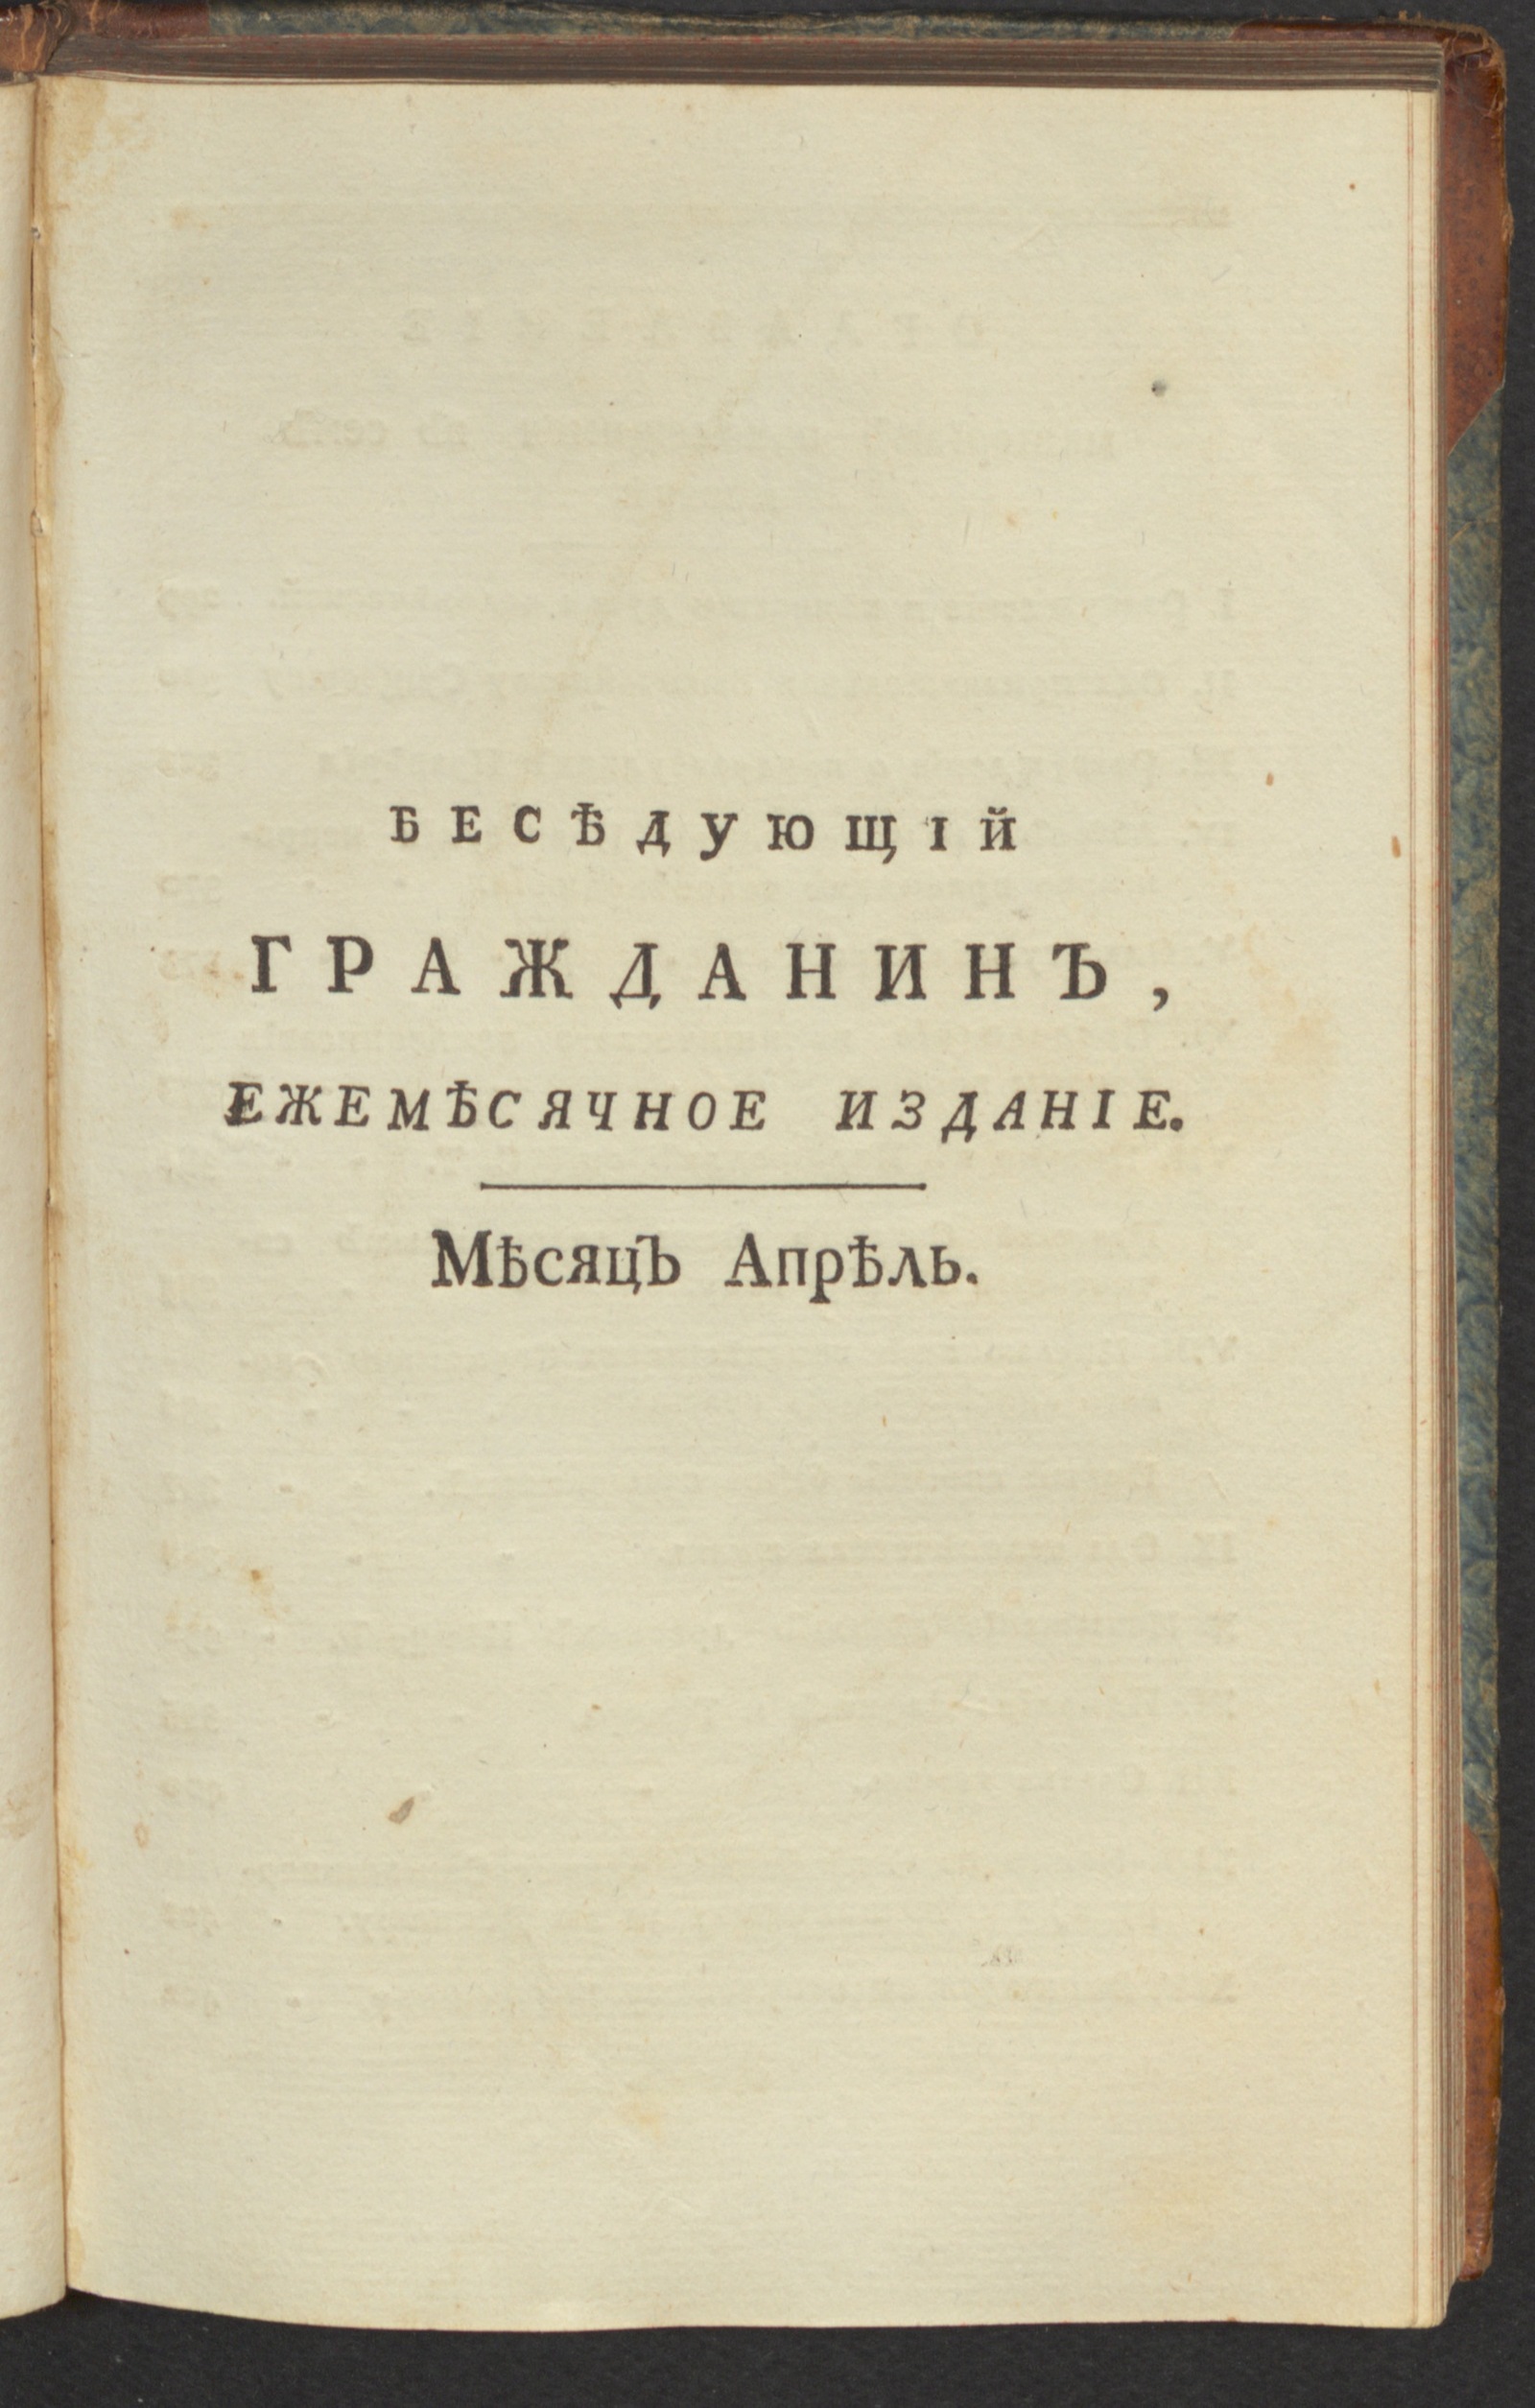 Изображение книги Беседующий гражданин. Ч. 1. [1789], апр